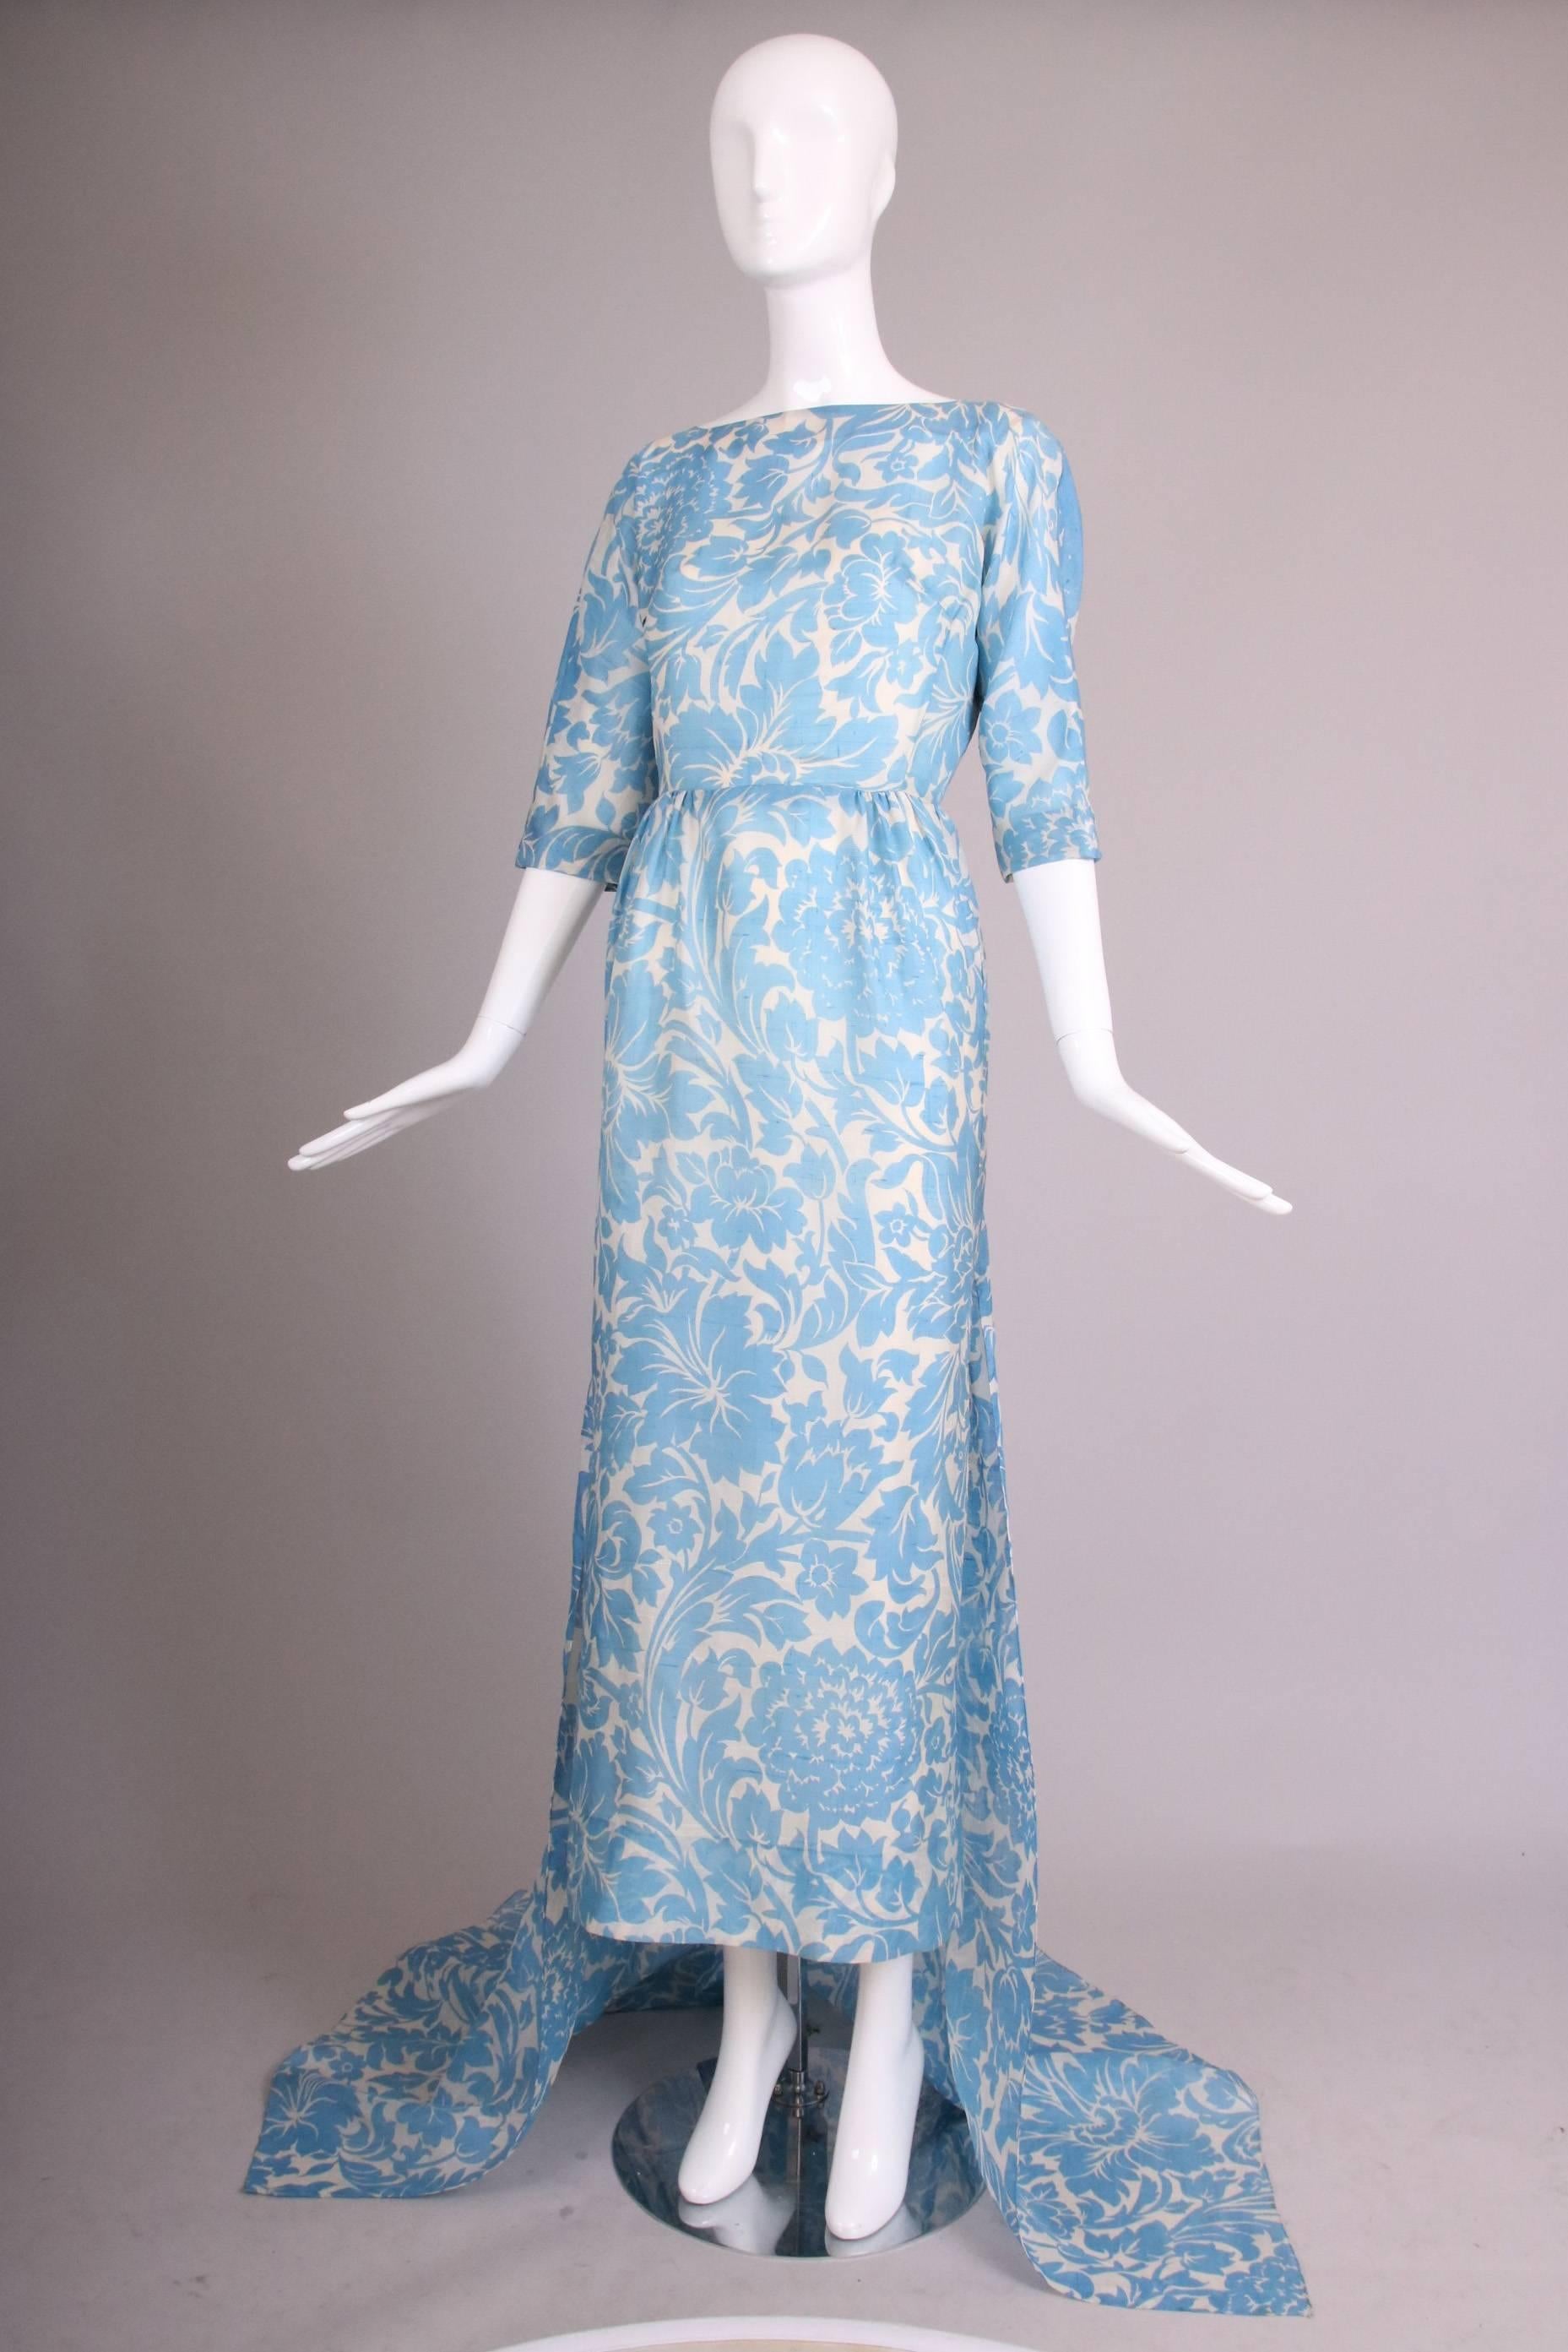 Women's Pauline Trigere Blue & White Floral Linen Evening Gown w/Long Train